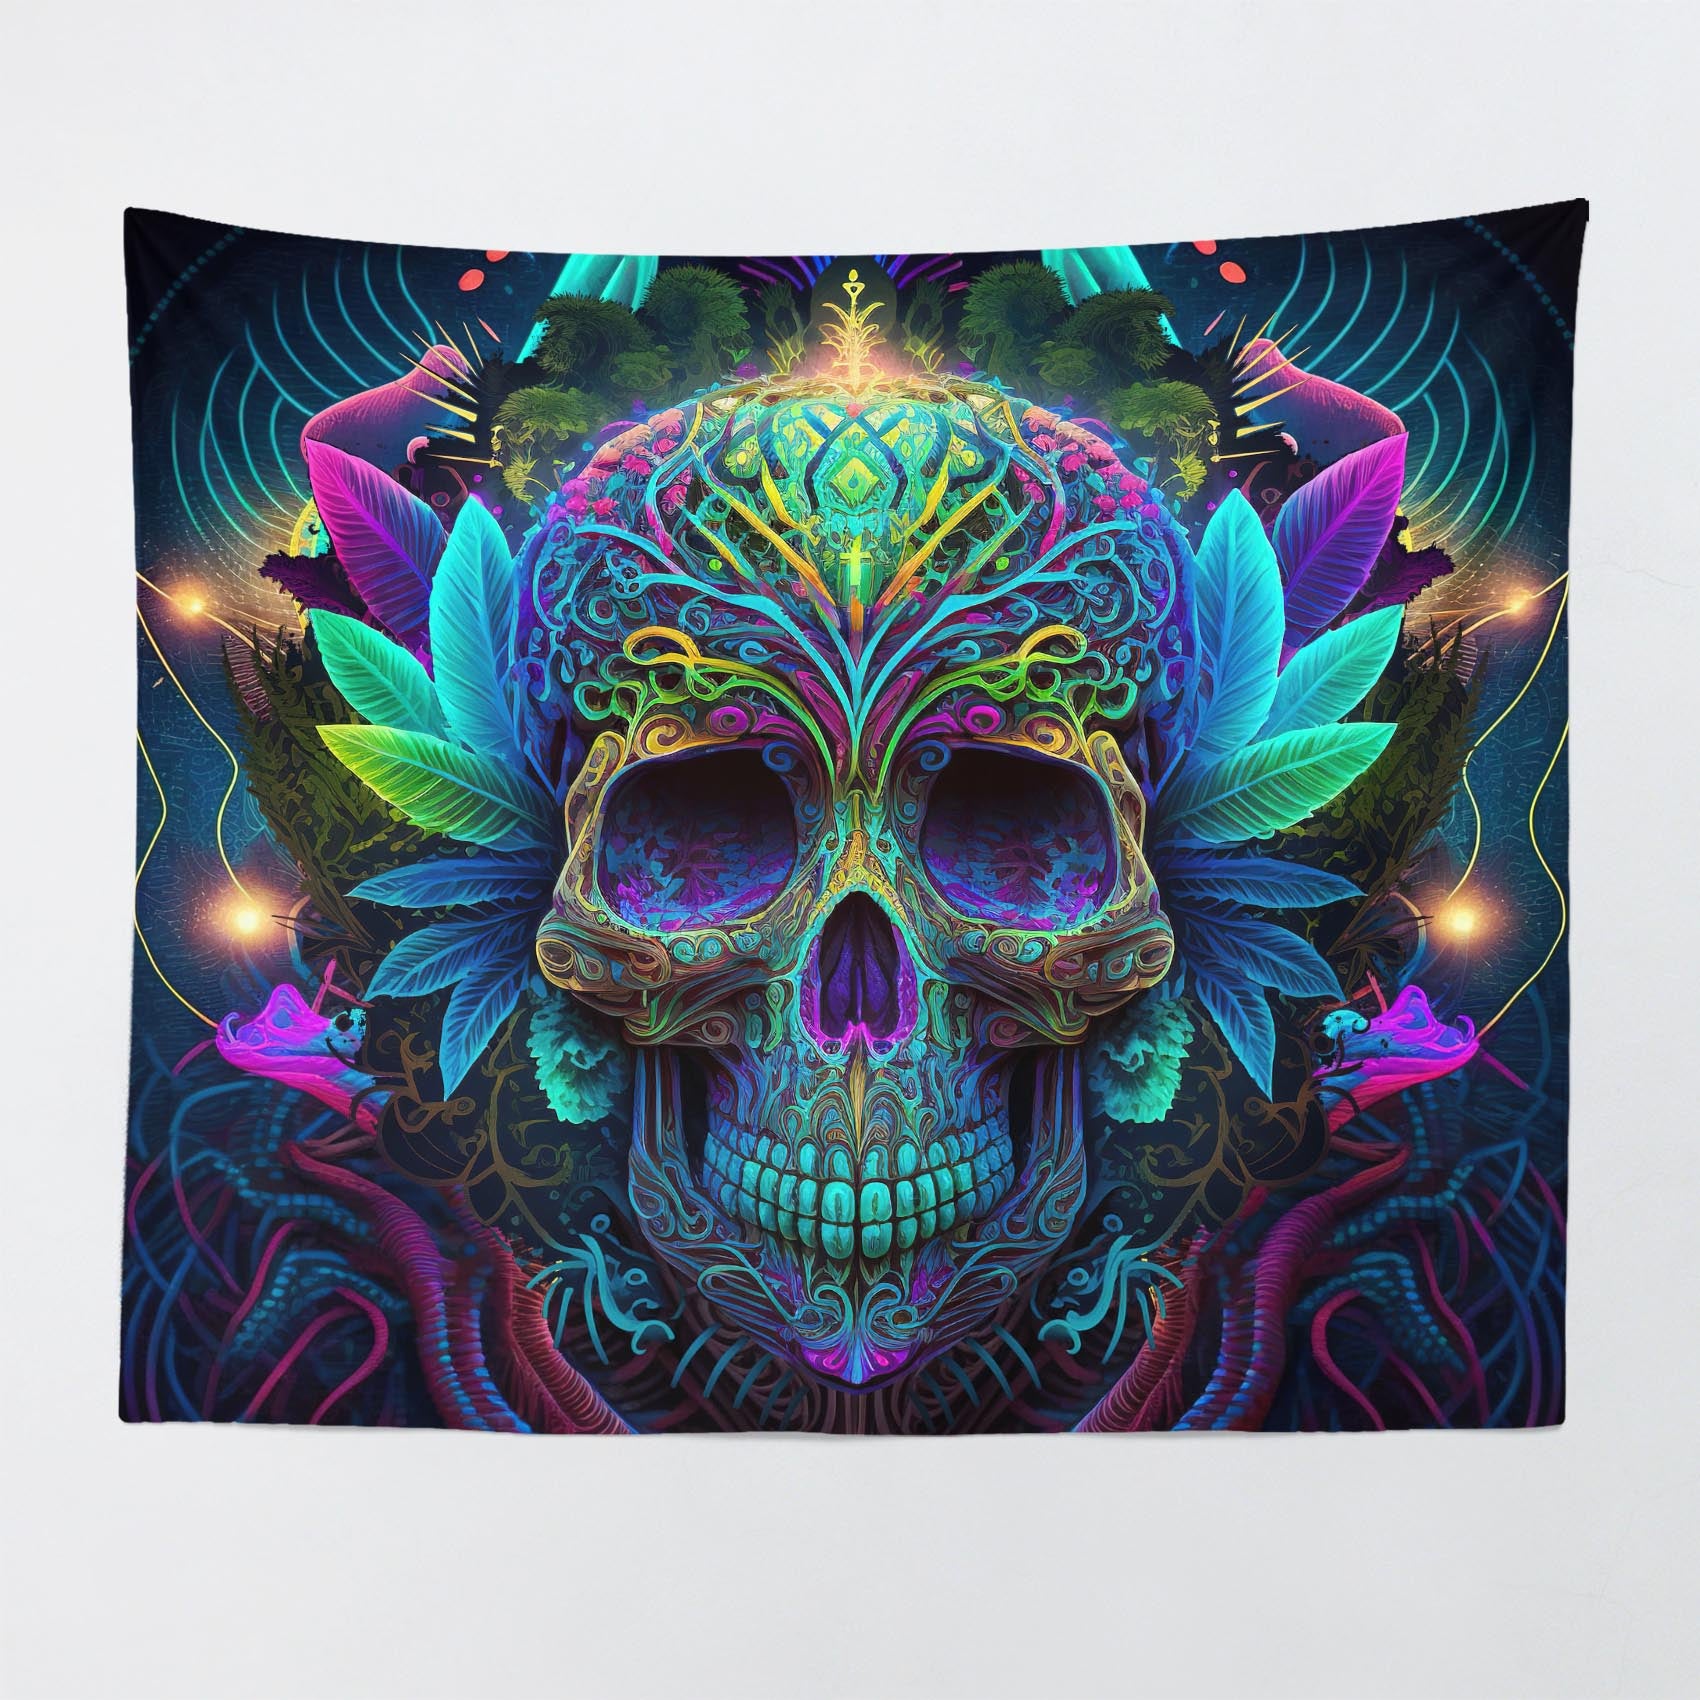 stoner tapestry wall decor dorm room aesthetic neon 420 skull